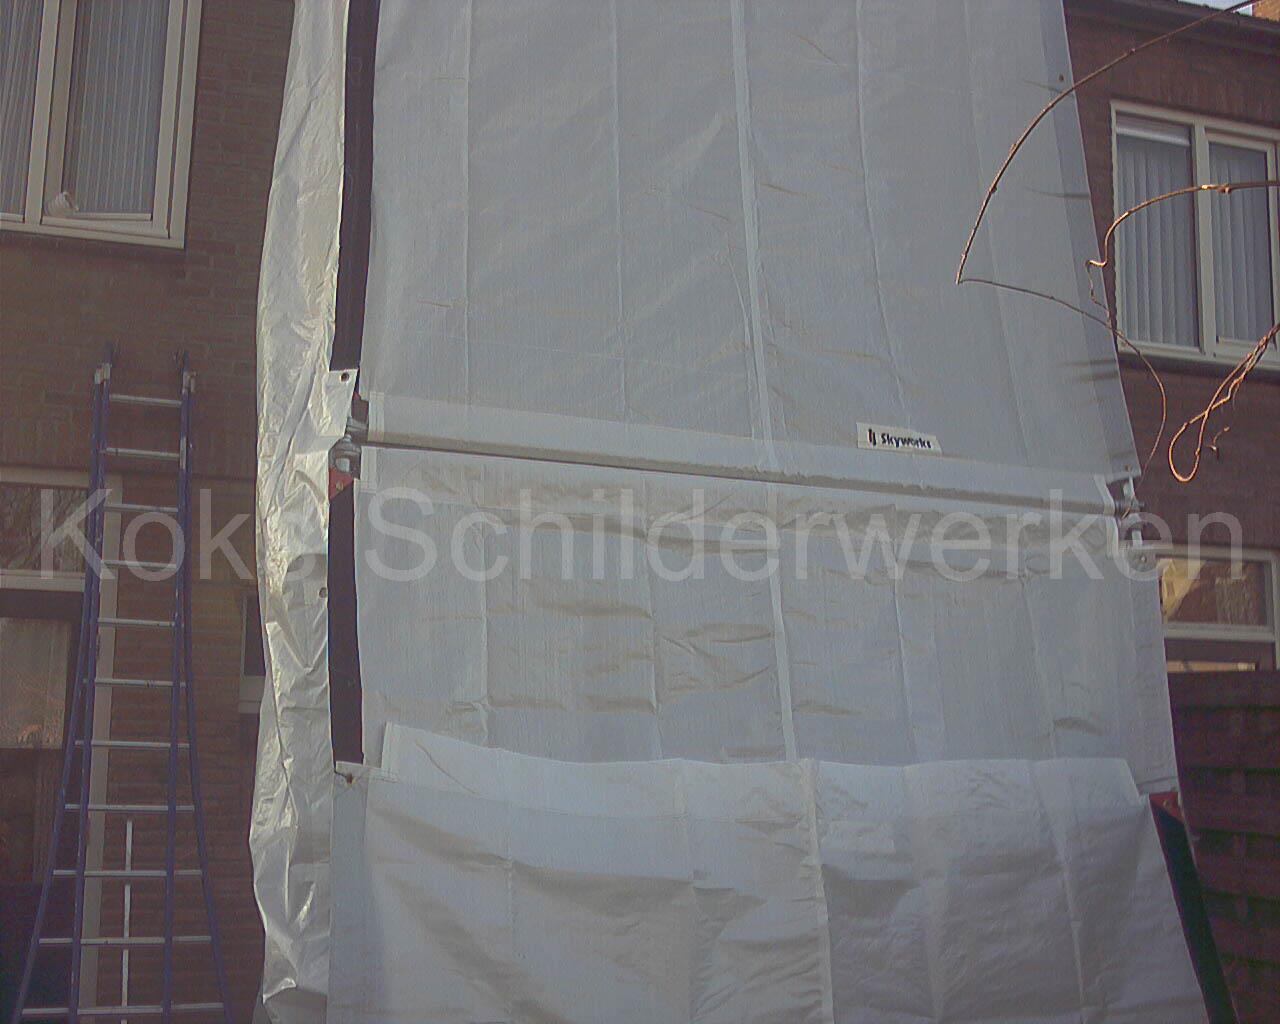 Afschermen van het schilderwerk bij een woning in Den Bosch